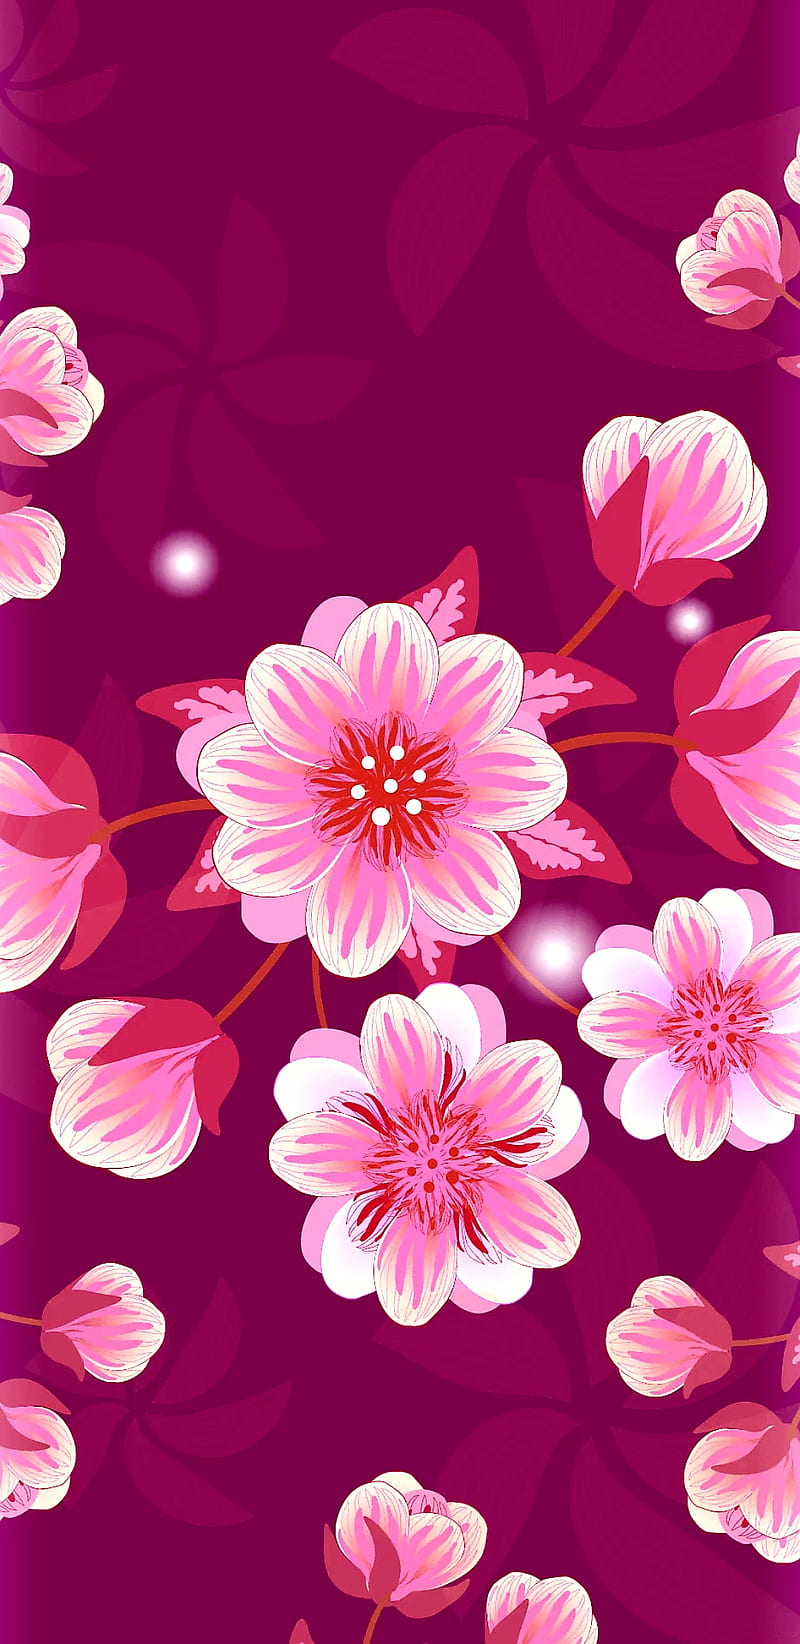 Những bông hoa anh đào màu hồng phấn rực rỡ sẽ đưa bạn vào một không gian dịu dàng ngọt ngào của mùa xuân. Hãy cùng thưởng thức hình ảnh này để tận hưởng sự tuyệt vời của hoa anh đào.